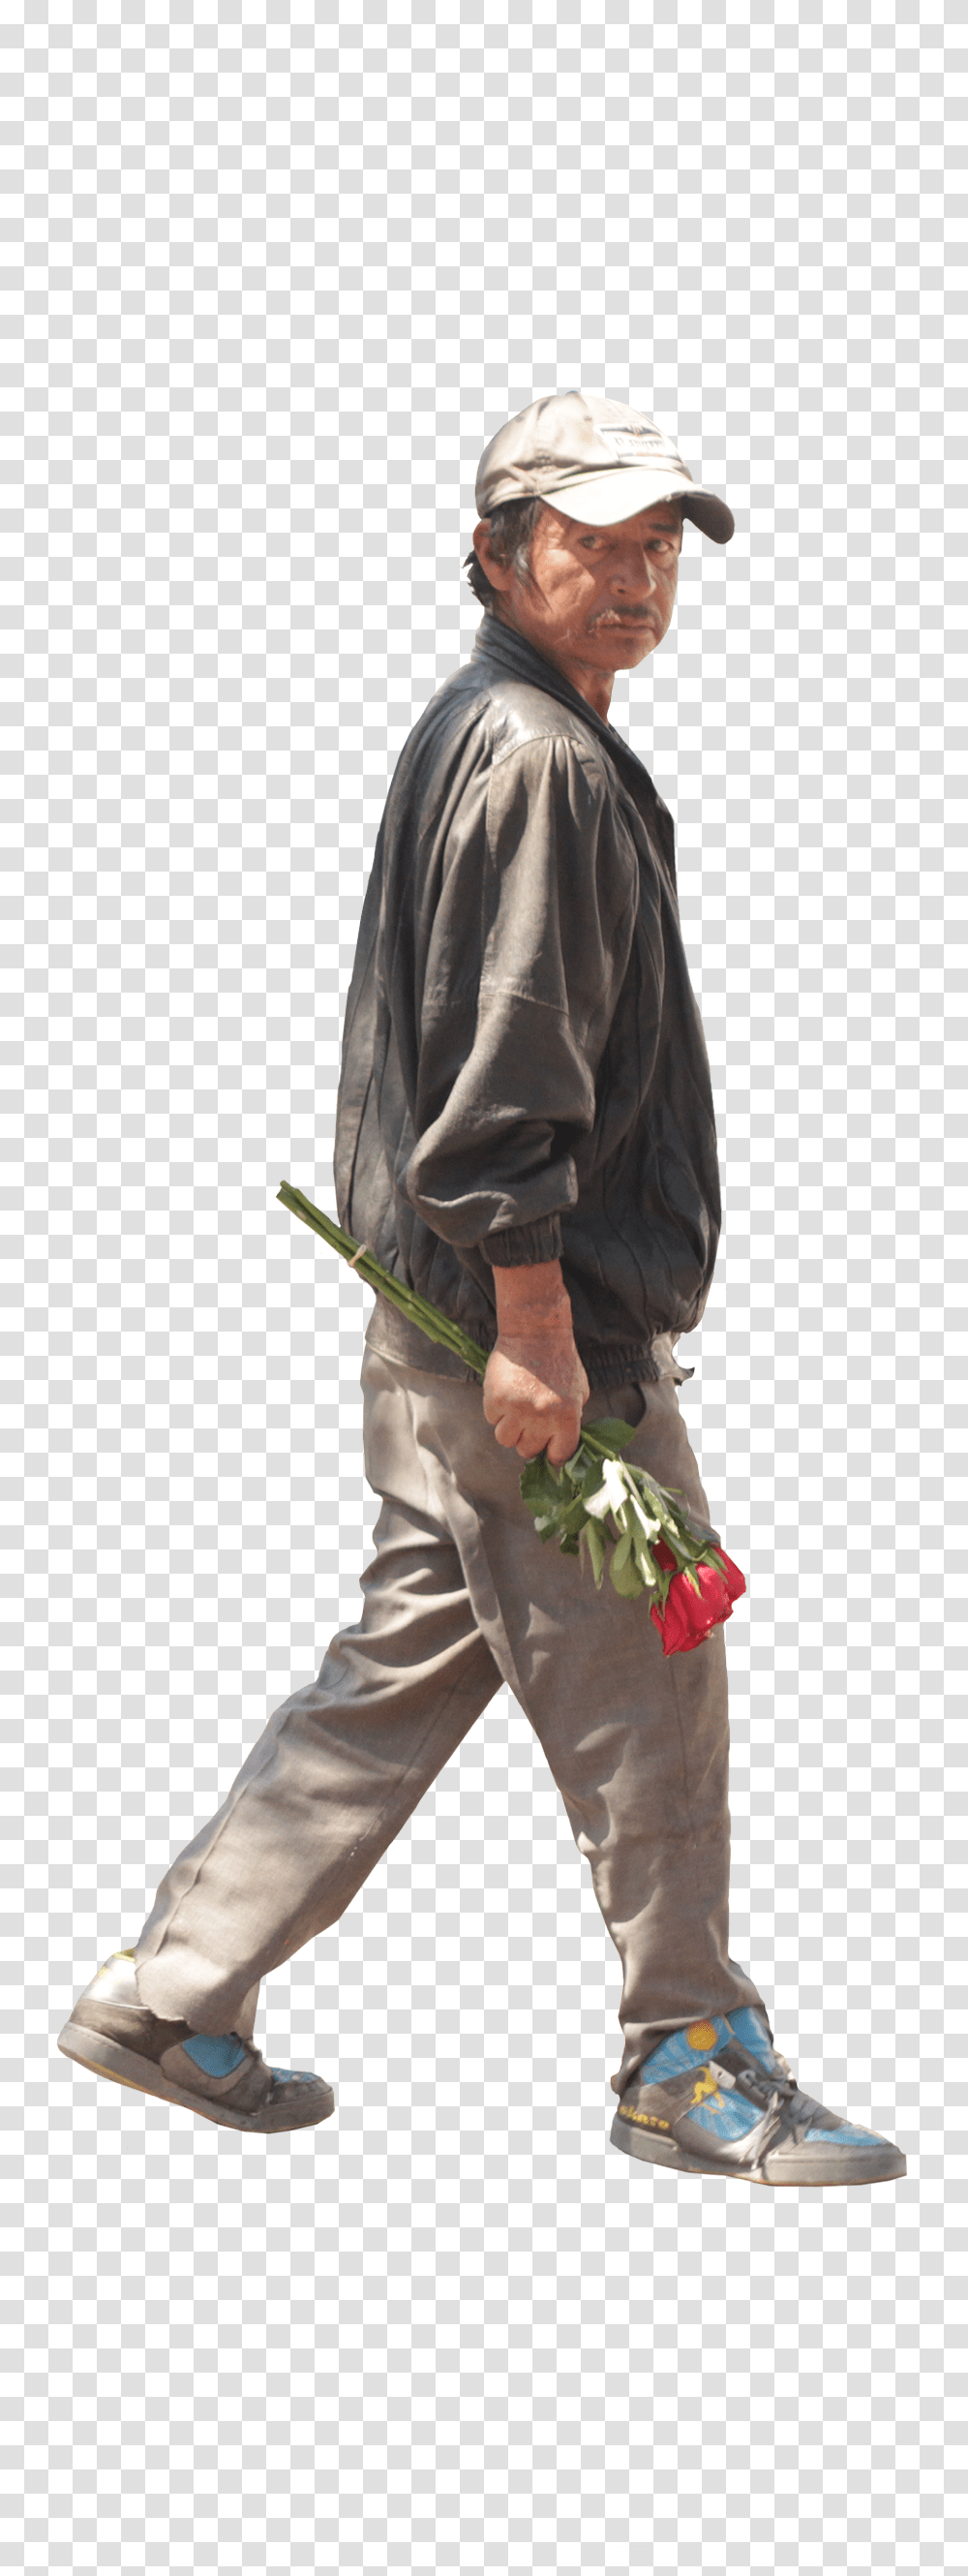 Hombre Perfil Latino Hombre De Perfil Caminando, Person, Plant, Shoe Transparent Png